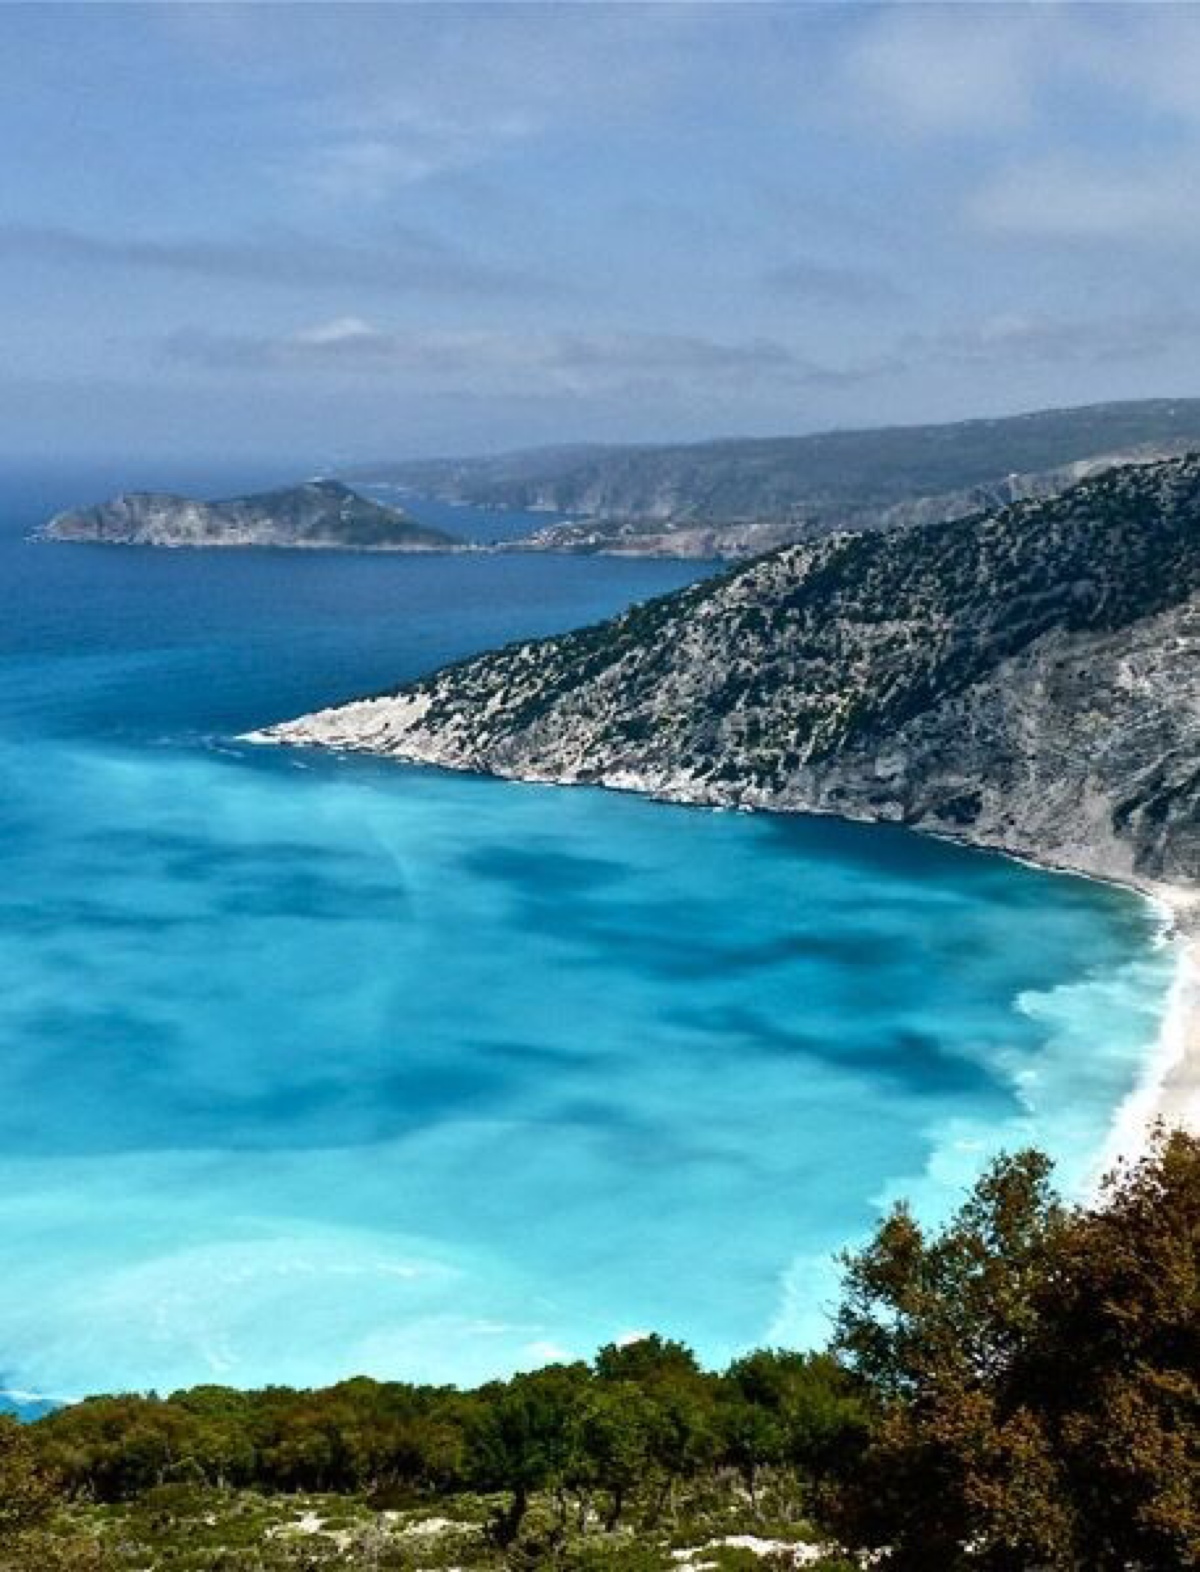 希腊:米尔托斯海滩 myrtos beach 米尔托斯海滩是希腊最美海滩,其位于